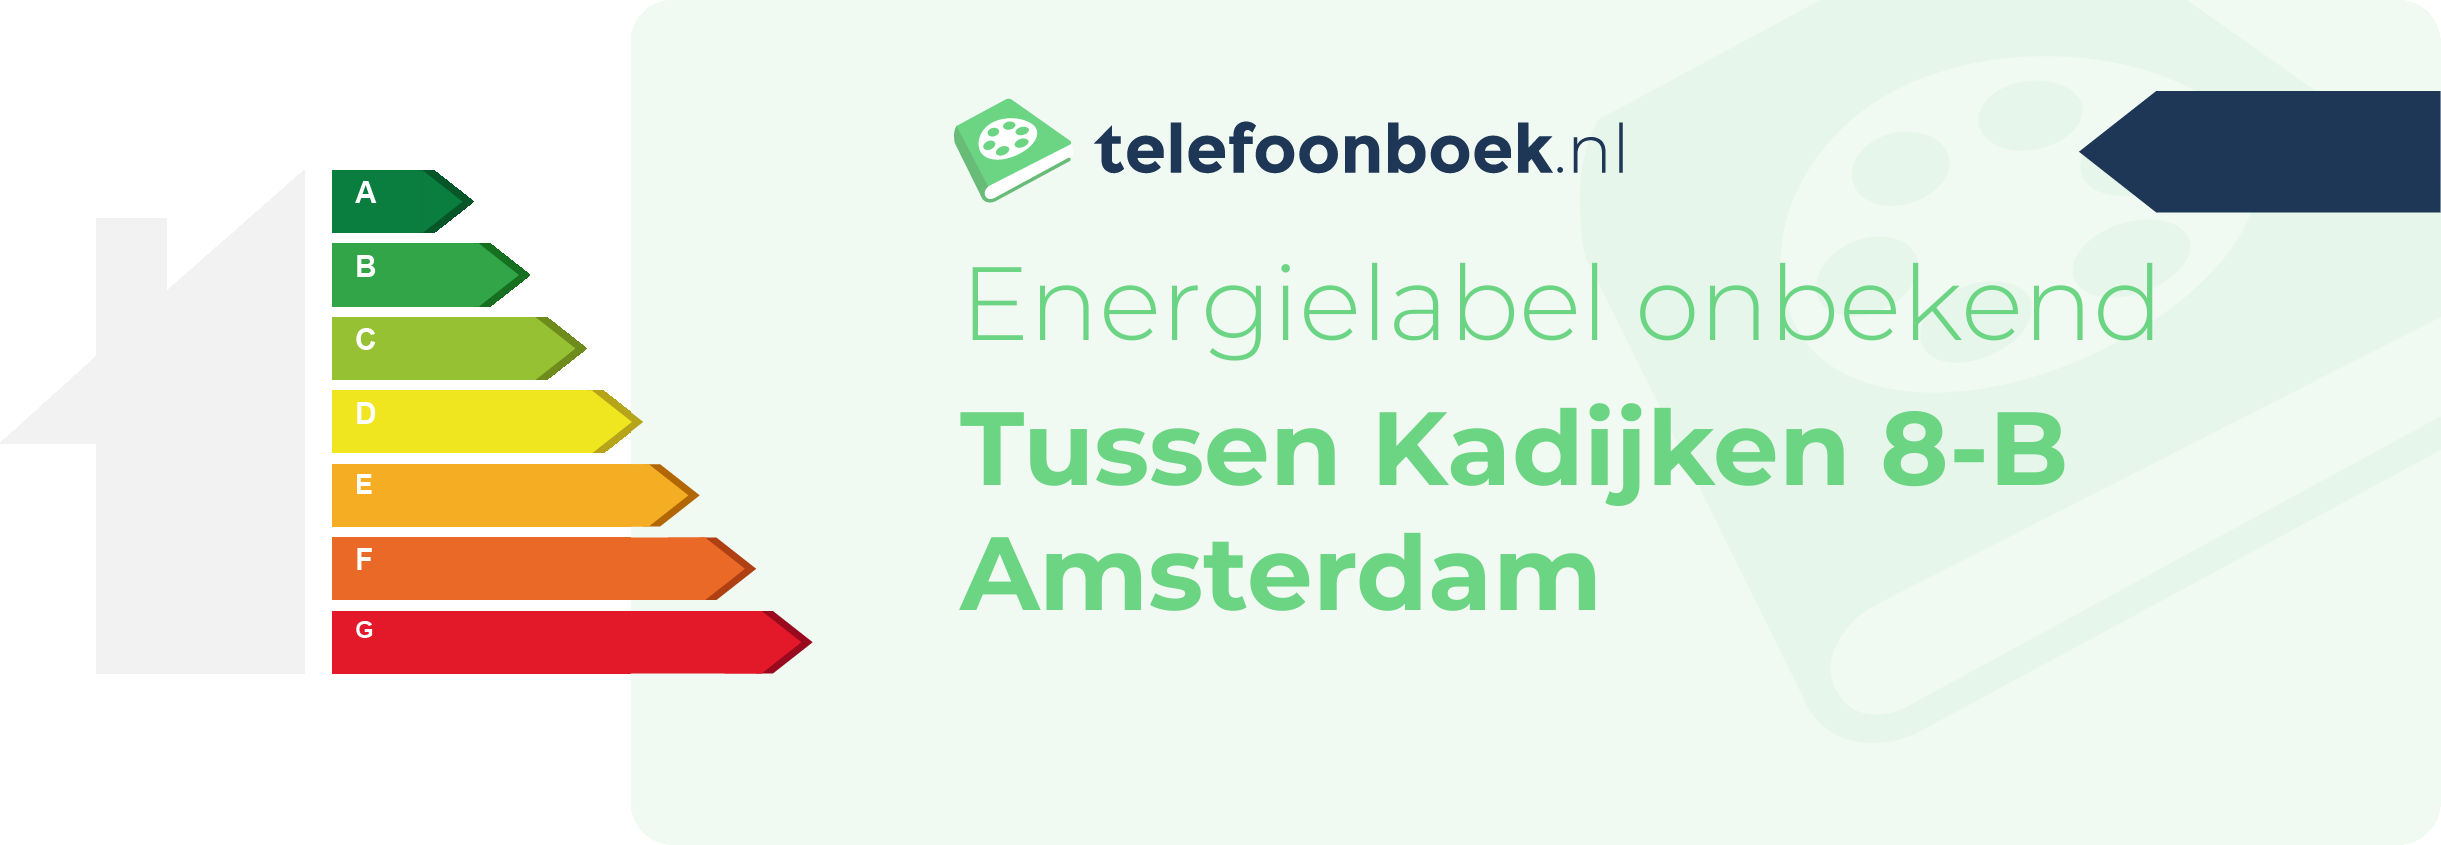 Energielabel Tussen Kadijken 8-B Amsterdam